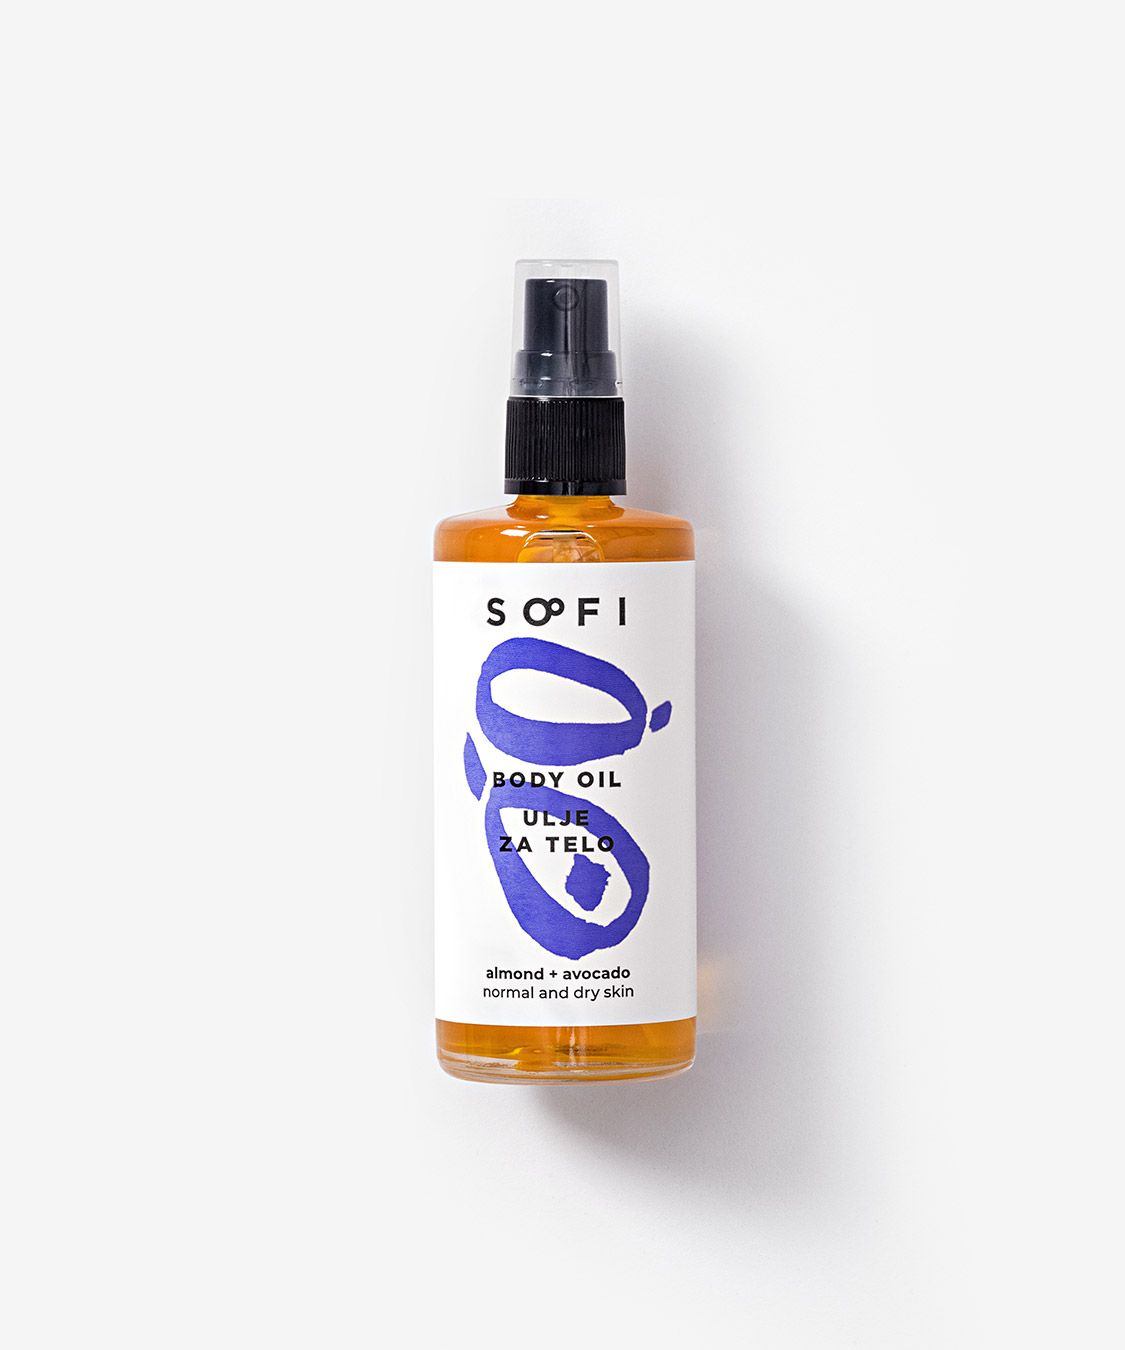 Body oil — almond + avocado